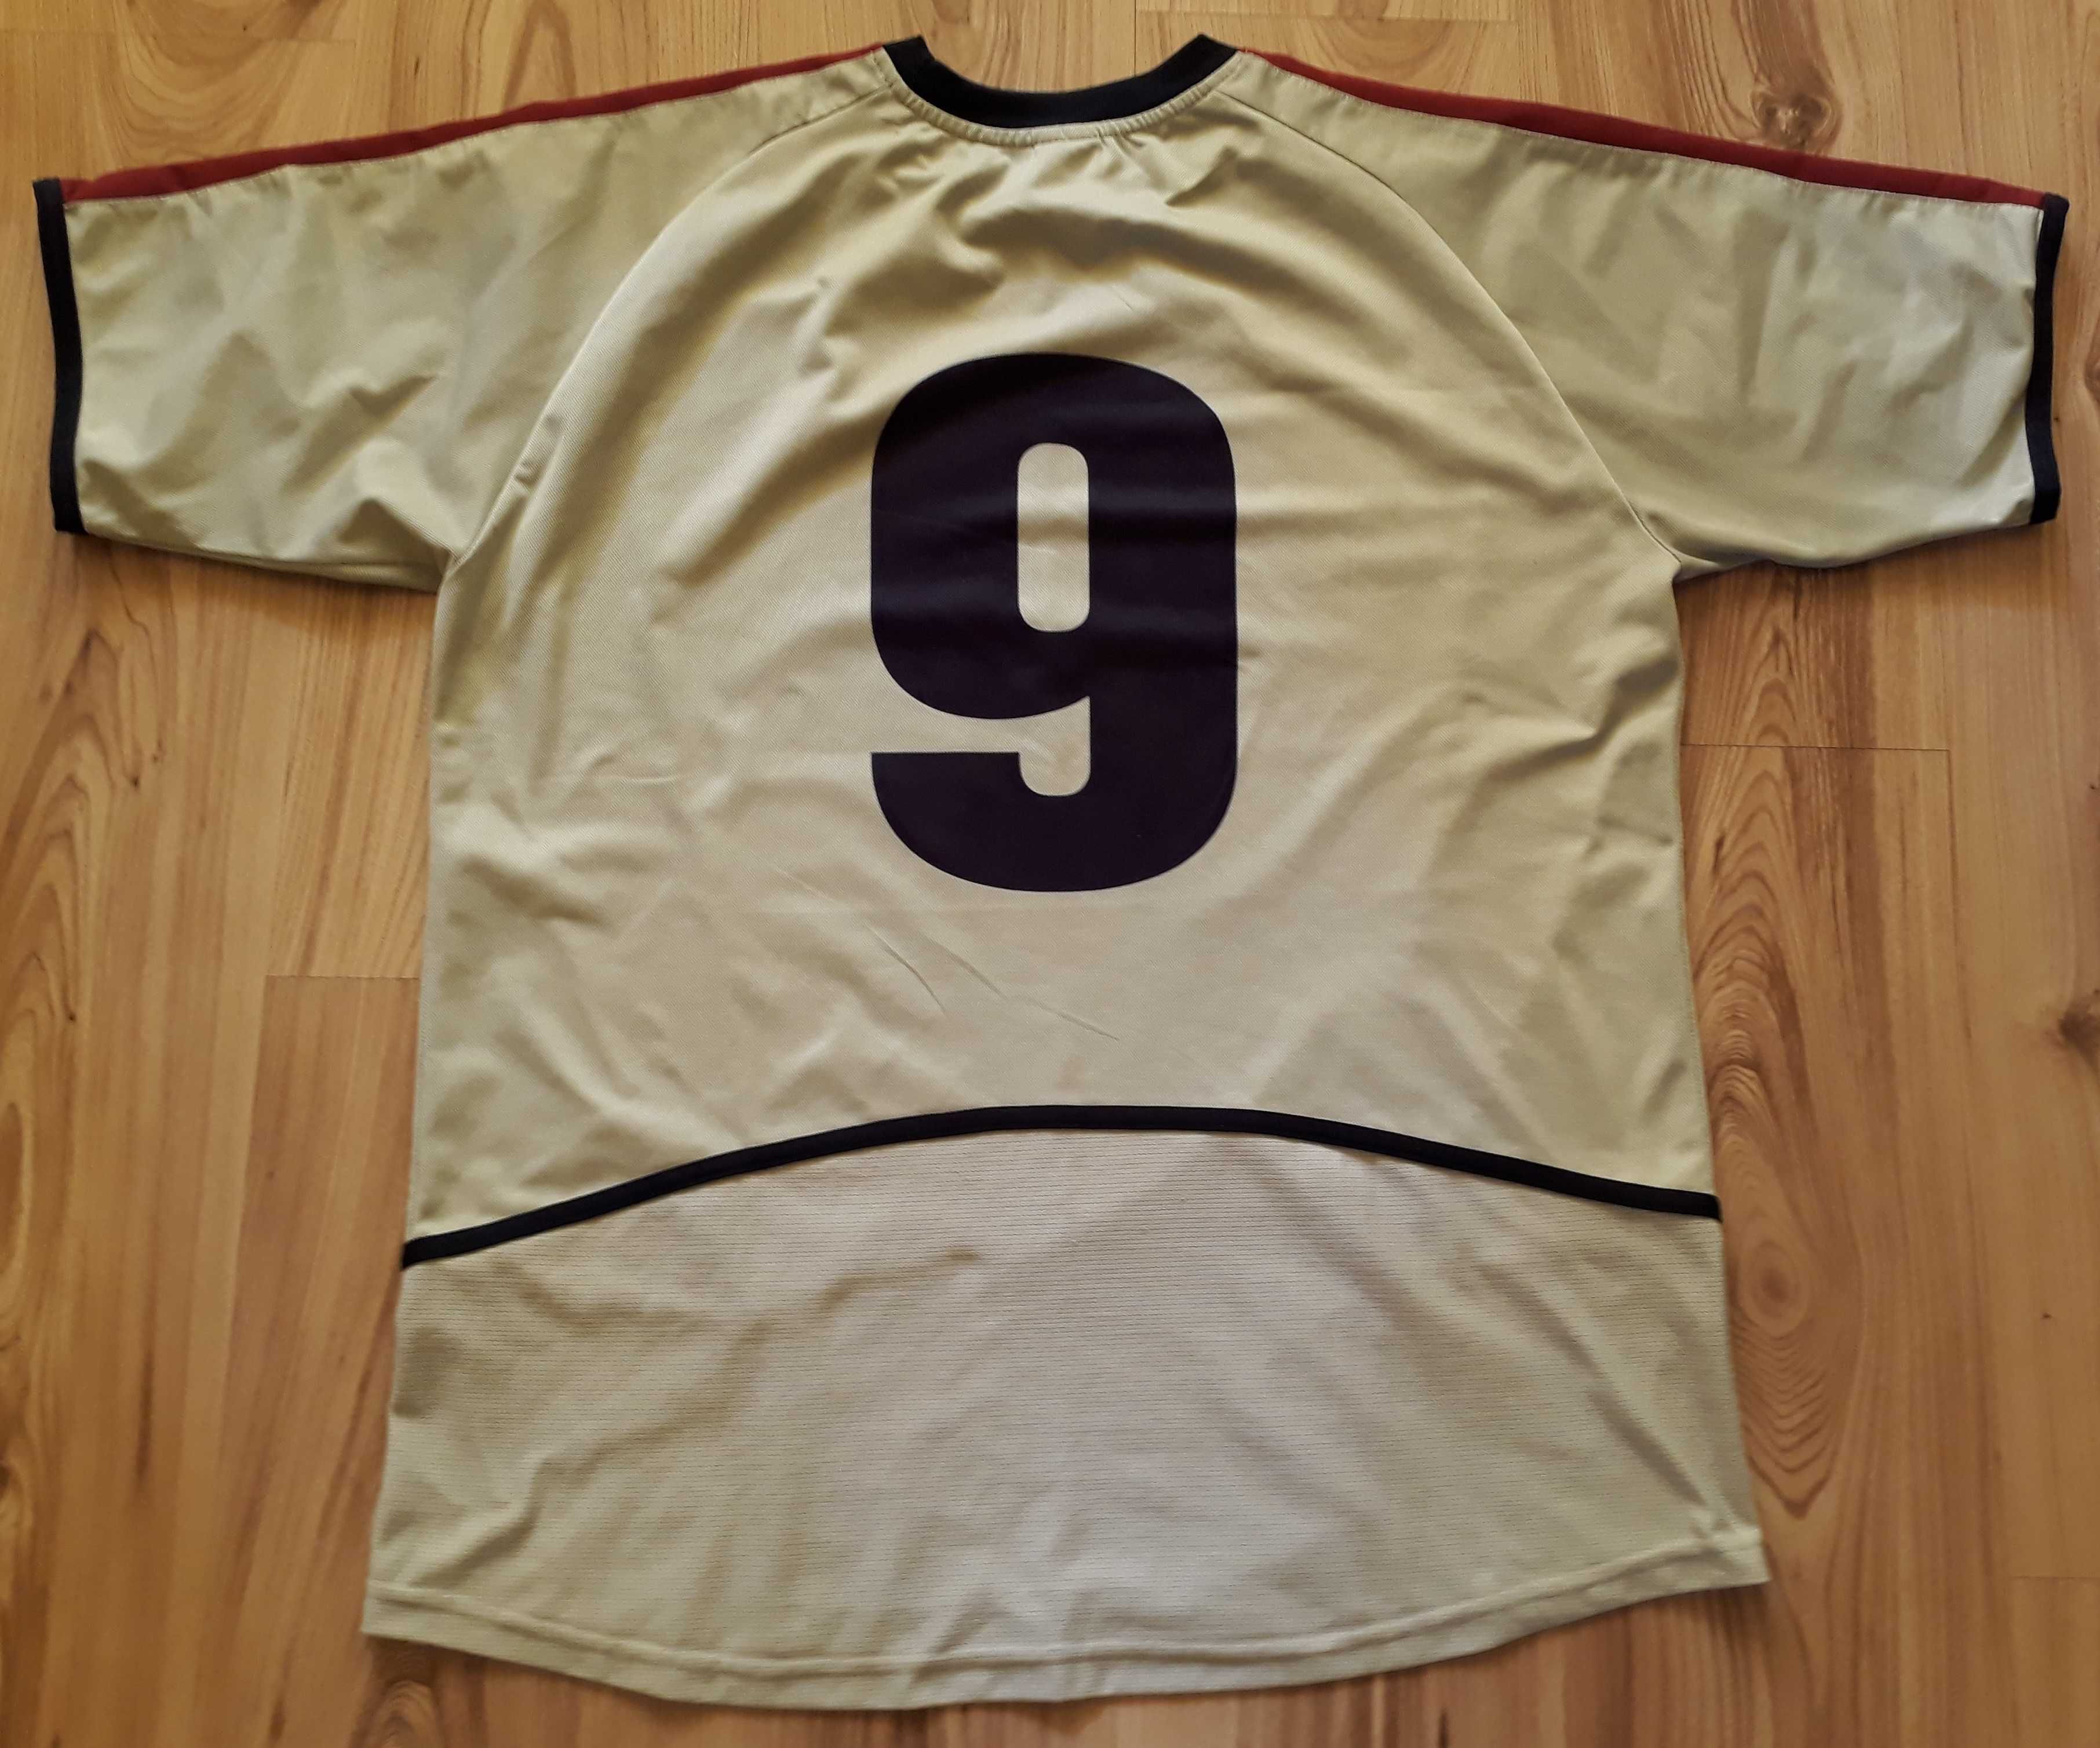 NOWA Koszulka sportowa VIGO meczowa z numerem 9 rozmiar L/XL